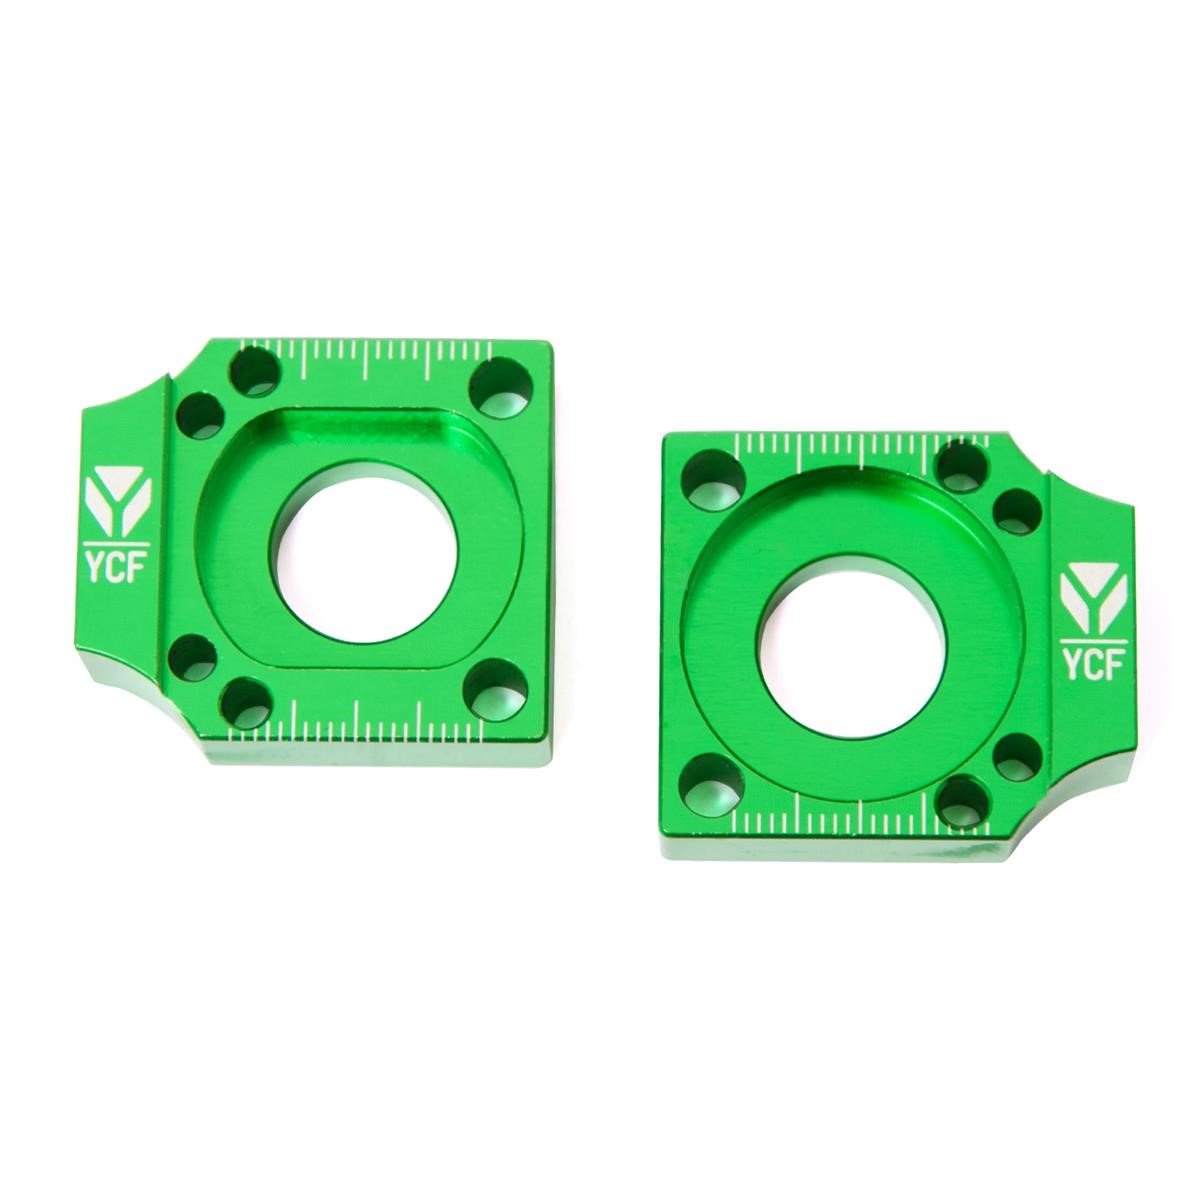 YCF Axle Blocks  for Aluminium Swingarms, Green